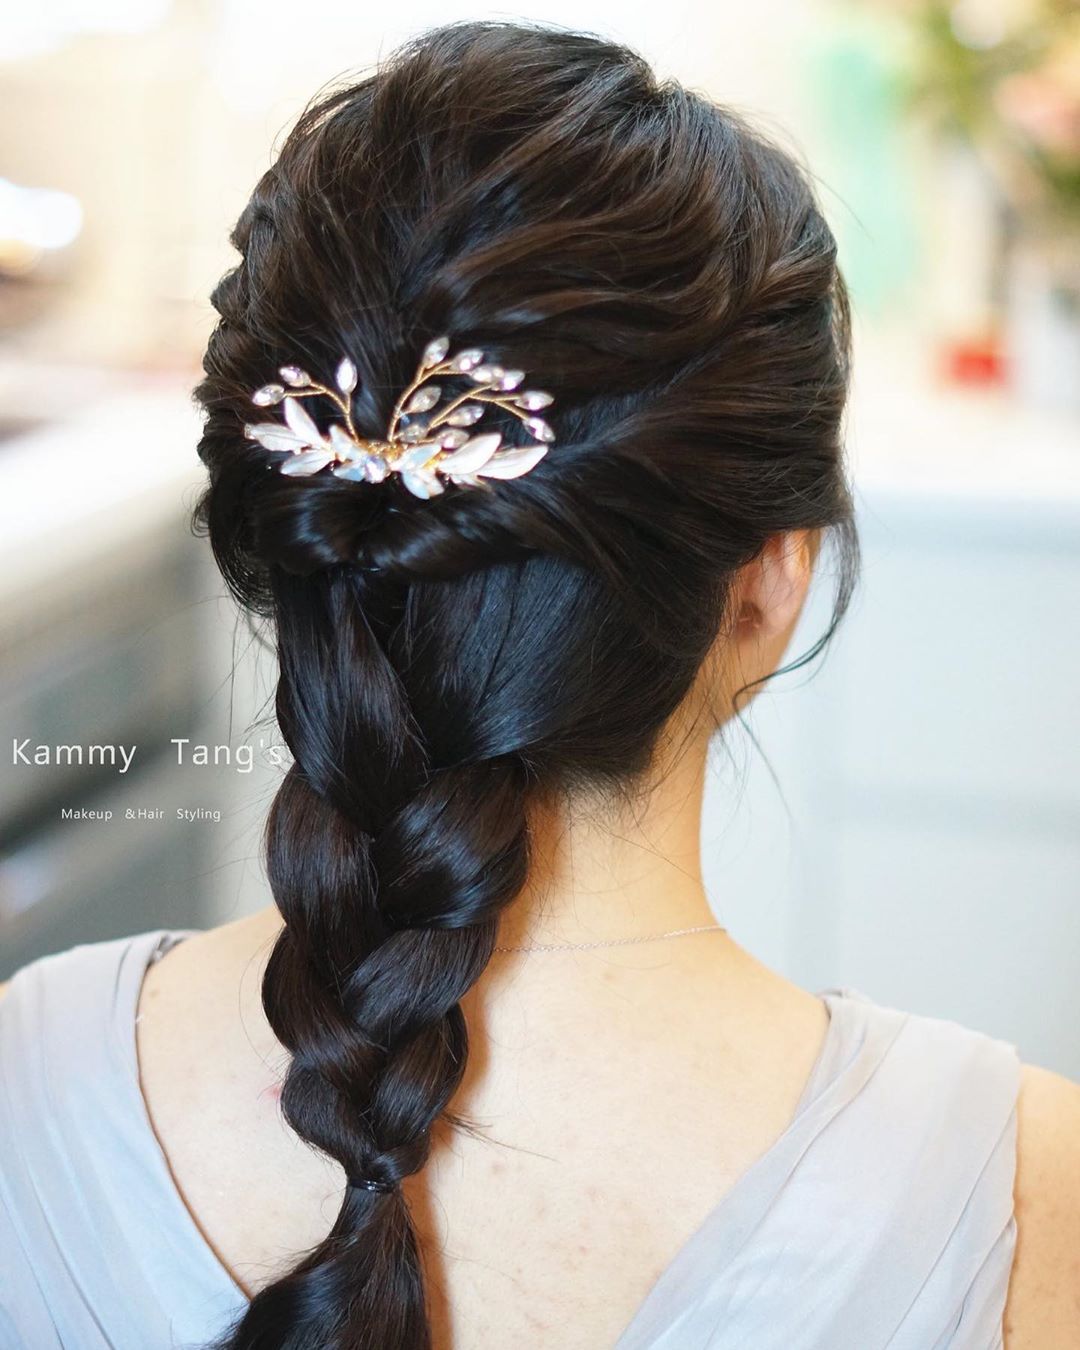 10 kiểu tóc đẹp hết nút giúp cô dâu tỏa sáng trong ngày cưới, đặc biệt là gợi ý búi tóc để tránh bị “dừ” - Ảnh 10.